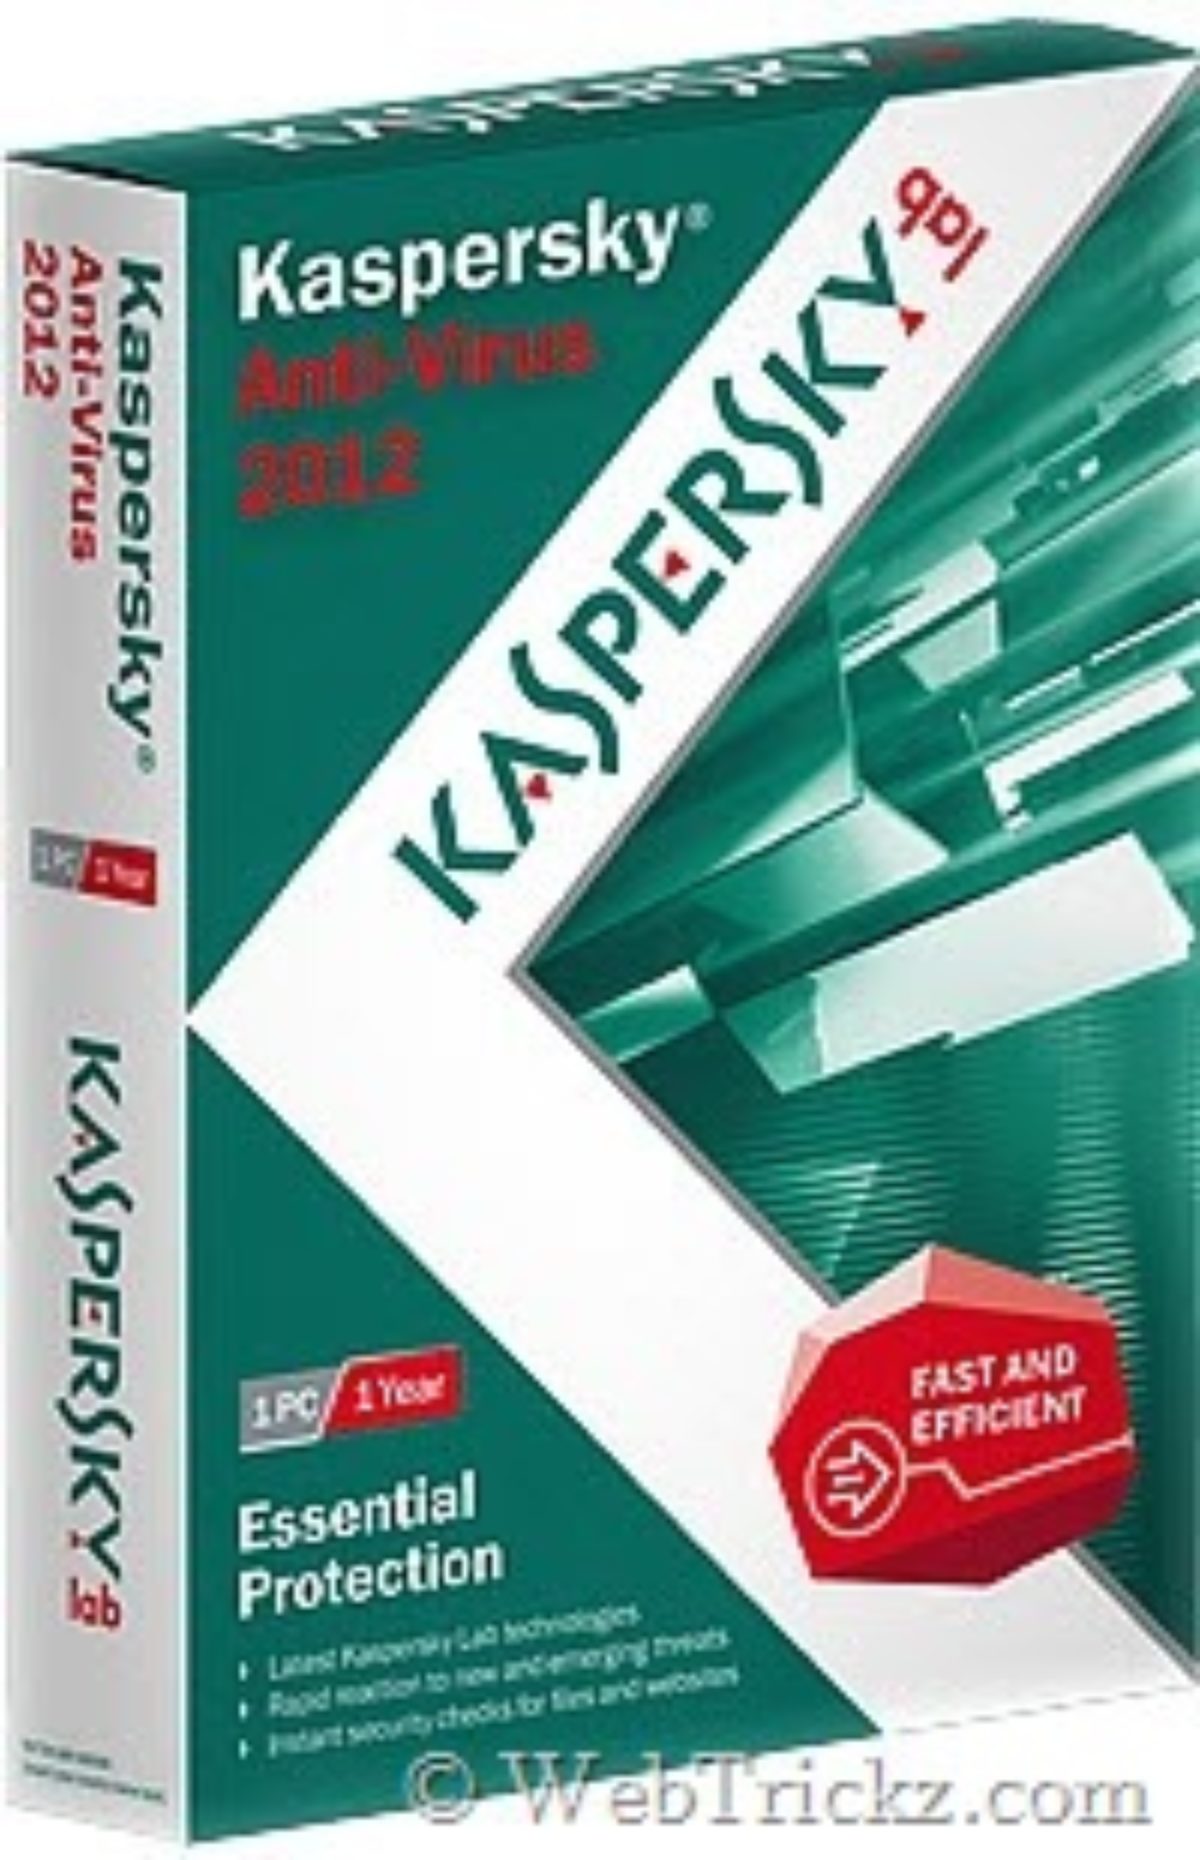 You are currently viewing Hoe Kan Ik De Algemene Proefversie Van Kaspersky Anti-Virus 2012 Herstellen?